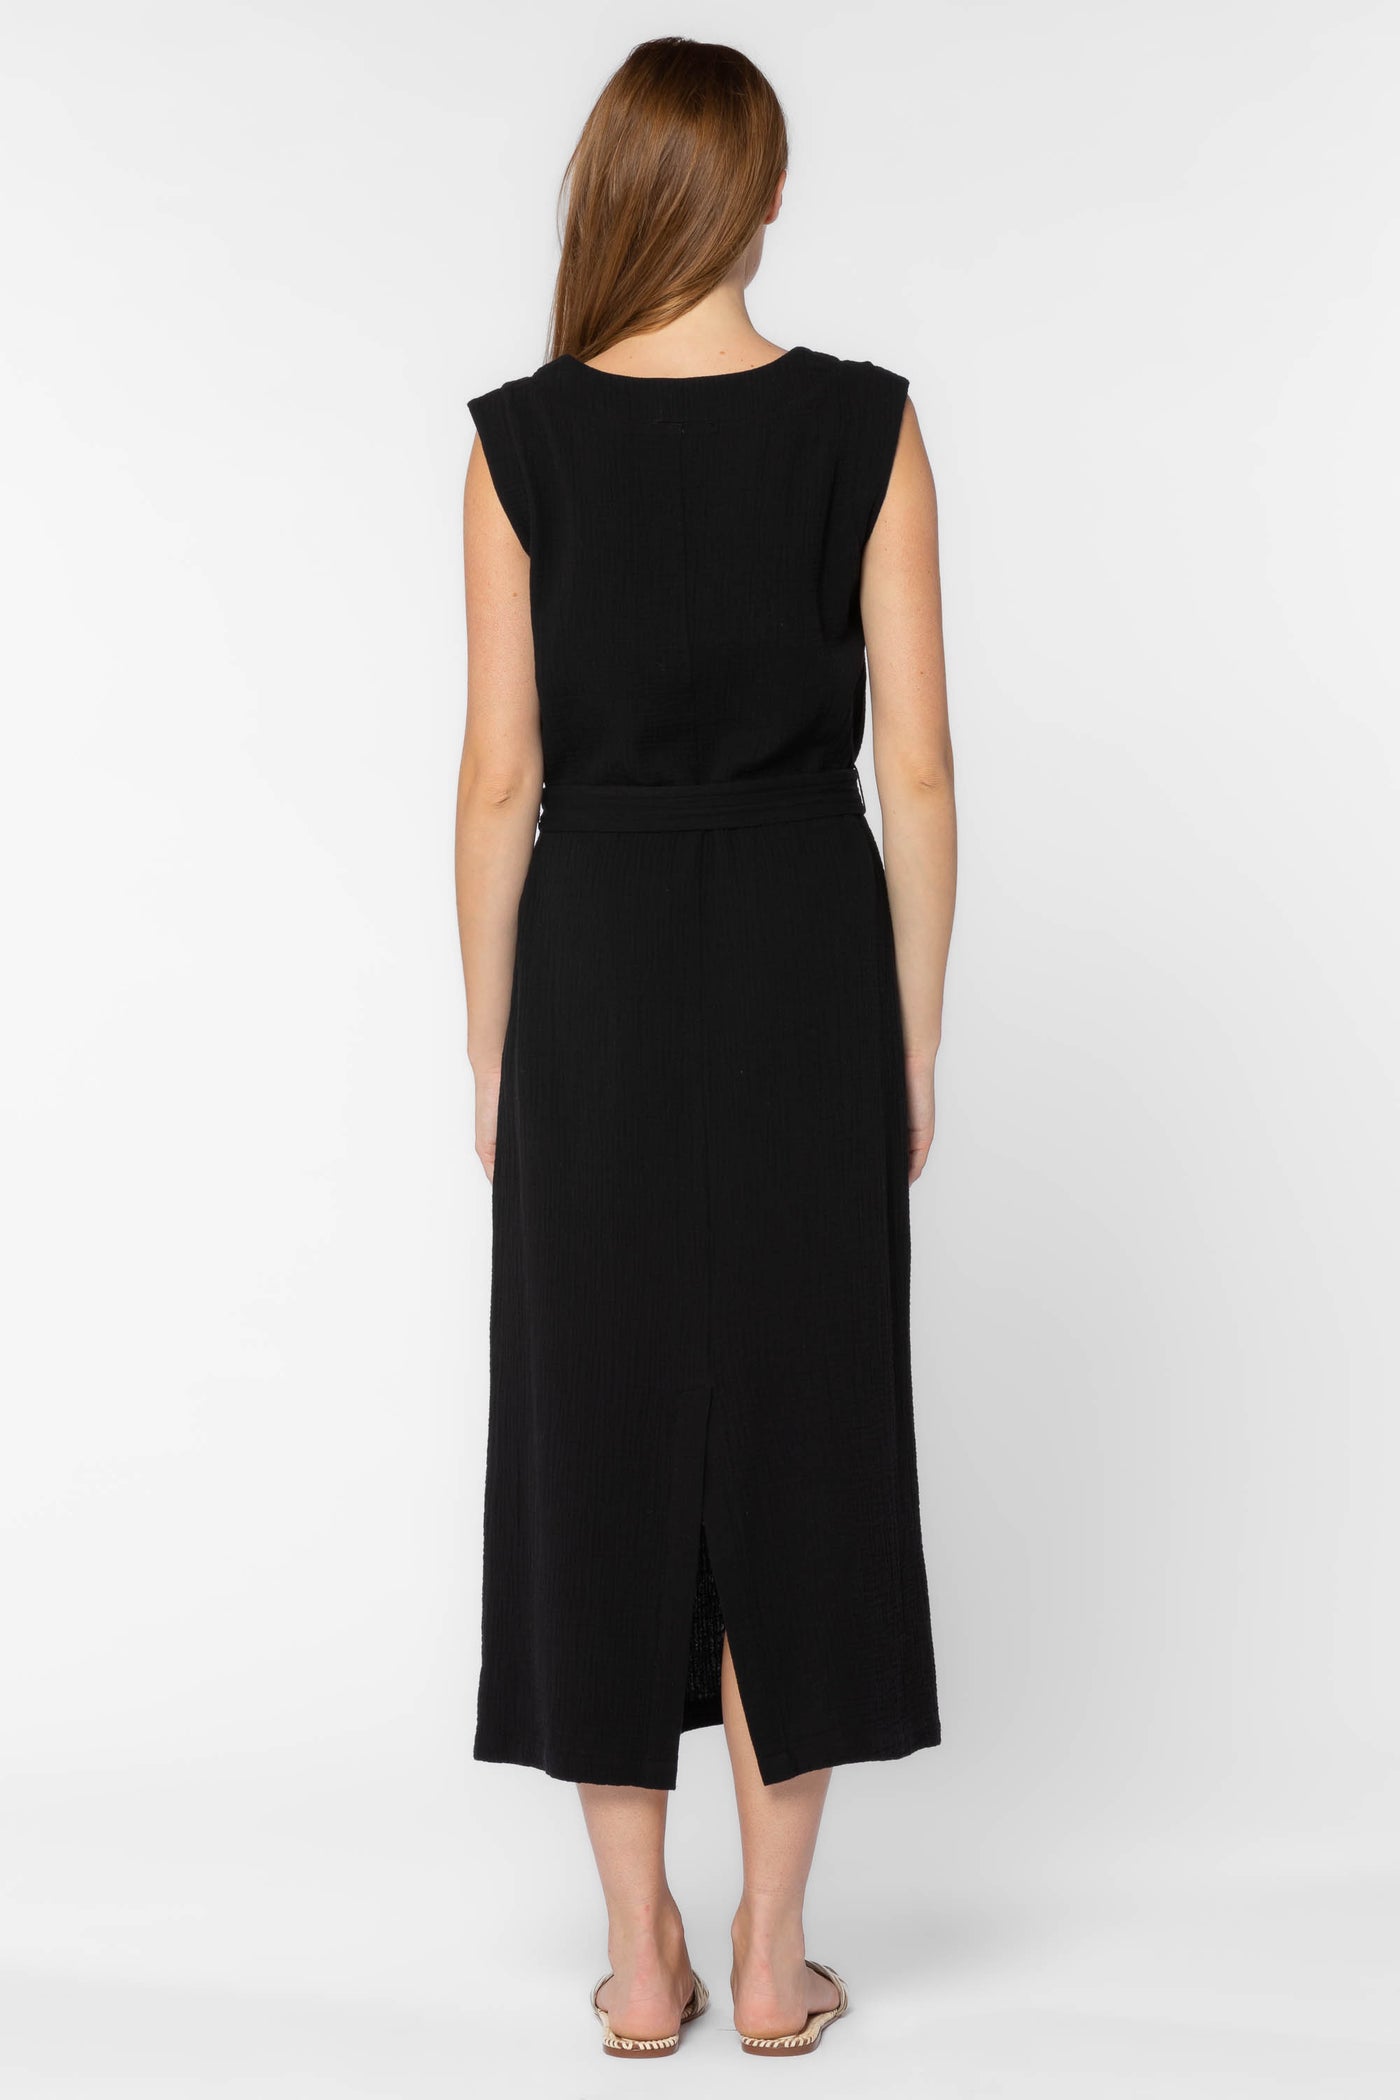 Aurelie Black Dress - Dresses - Velvet Heart Clothing